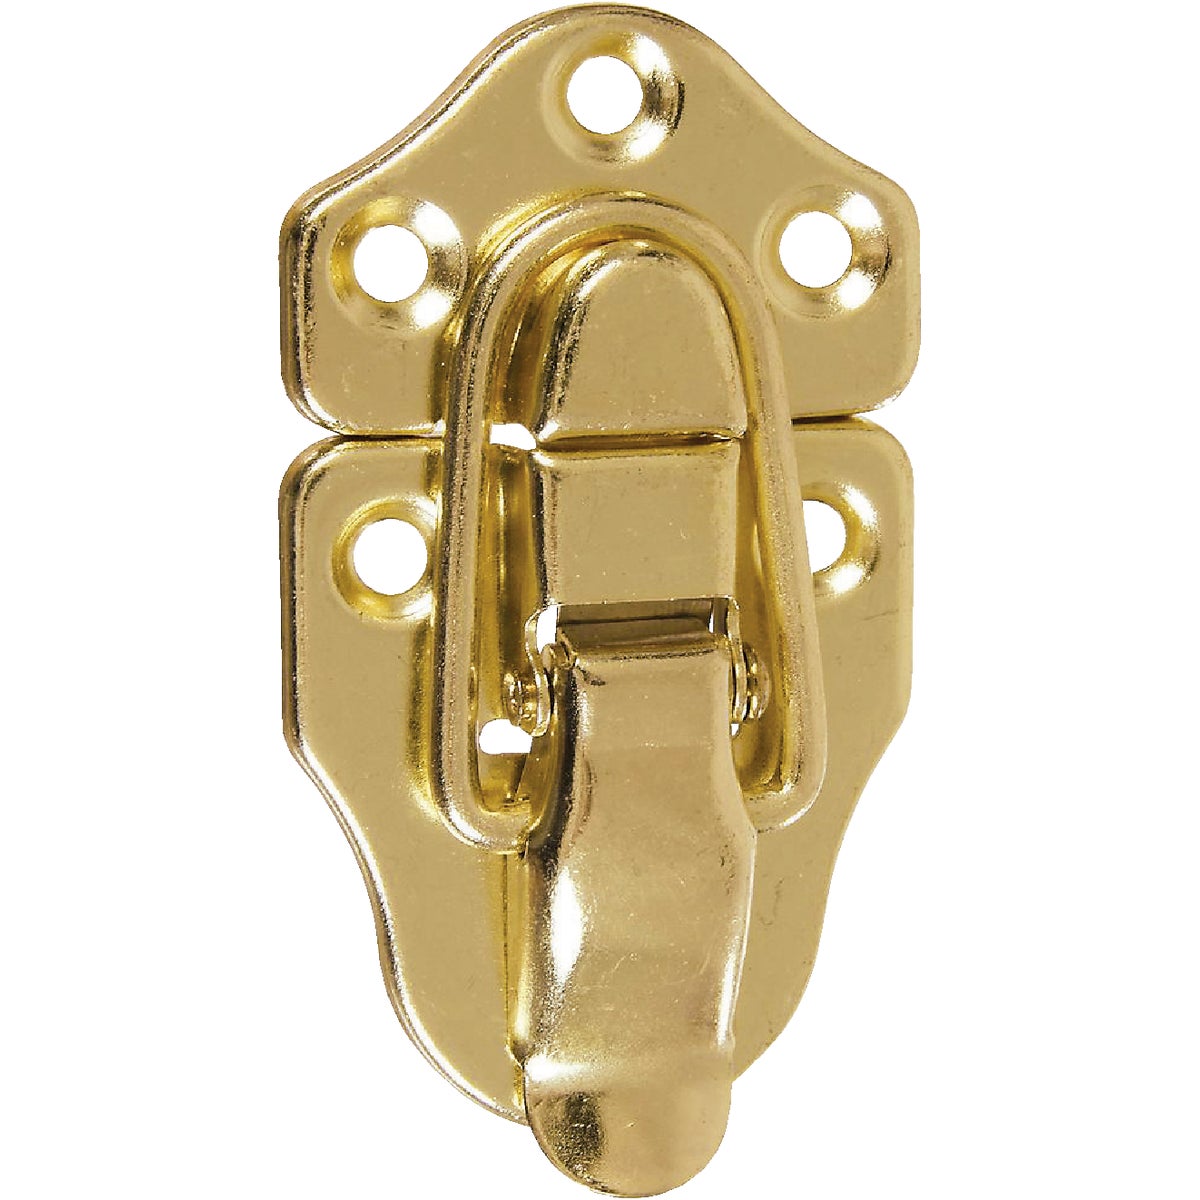 Item 206486, National catalog model No. V1848. Miniature brass.